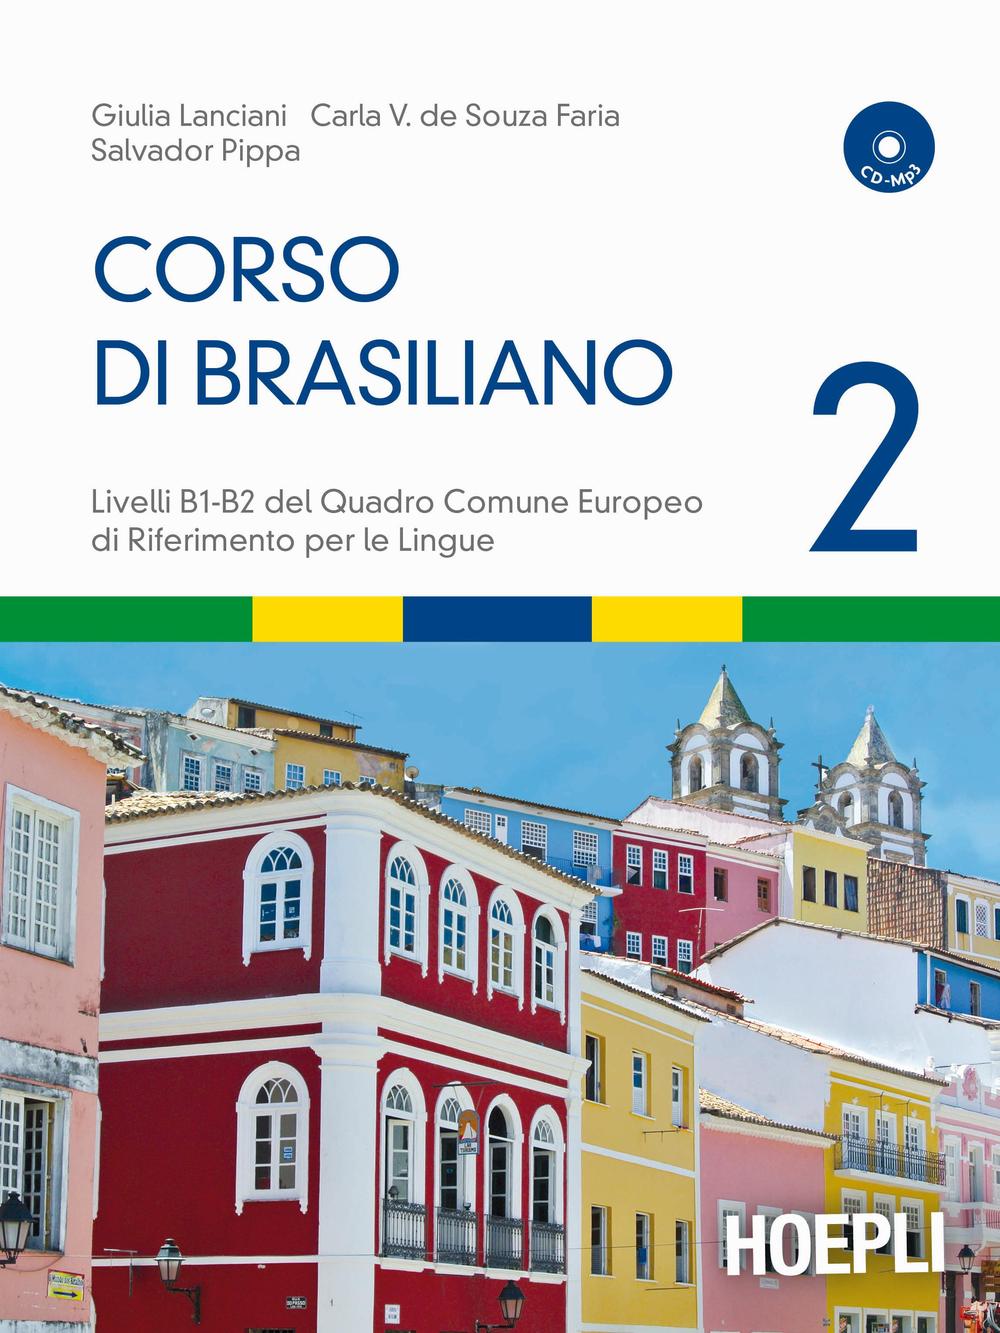 Libri Giulia Lanciani / Souza Faria Carla V. de / Pippa Salvador - Corso Di Brasiliano. Con CD Audio Vol 02 NUOVO SIGILLATO, EDIZIONE DEL 13/05/2016 SUBITO DISPONIBILE